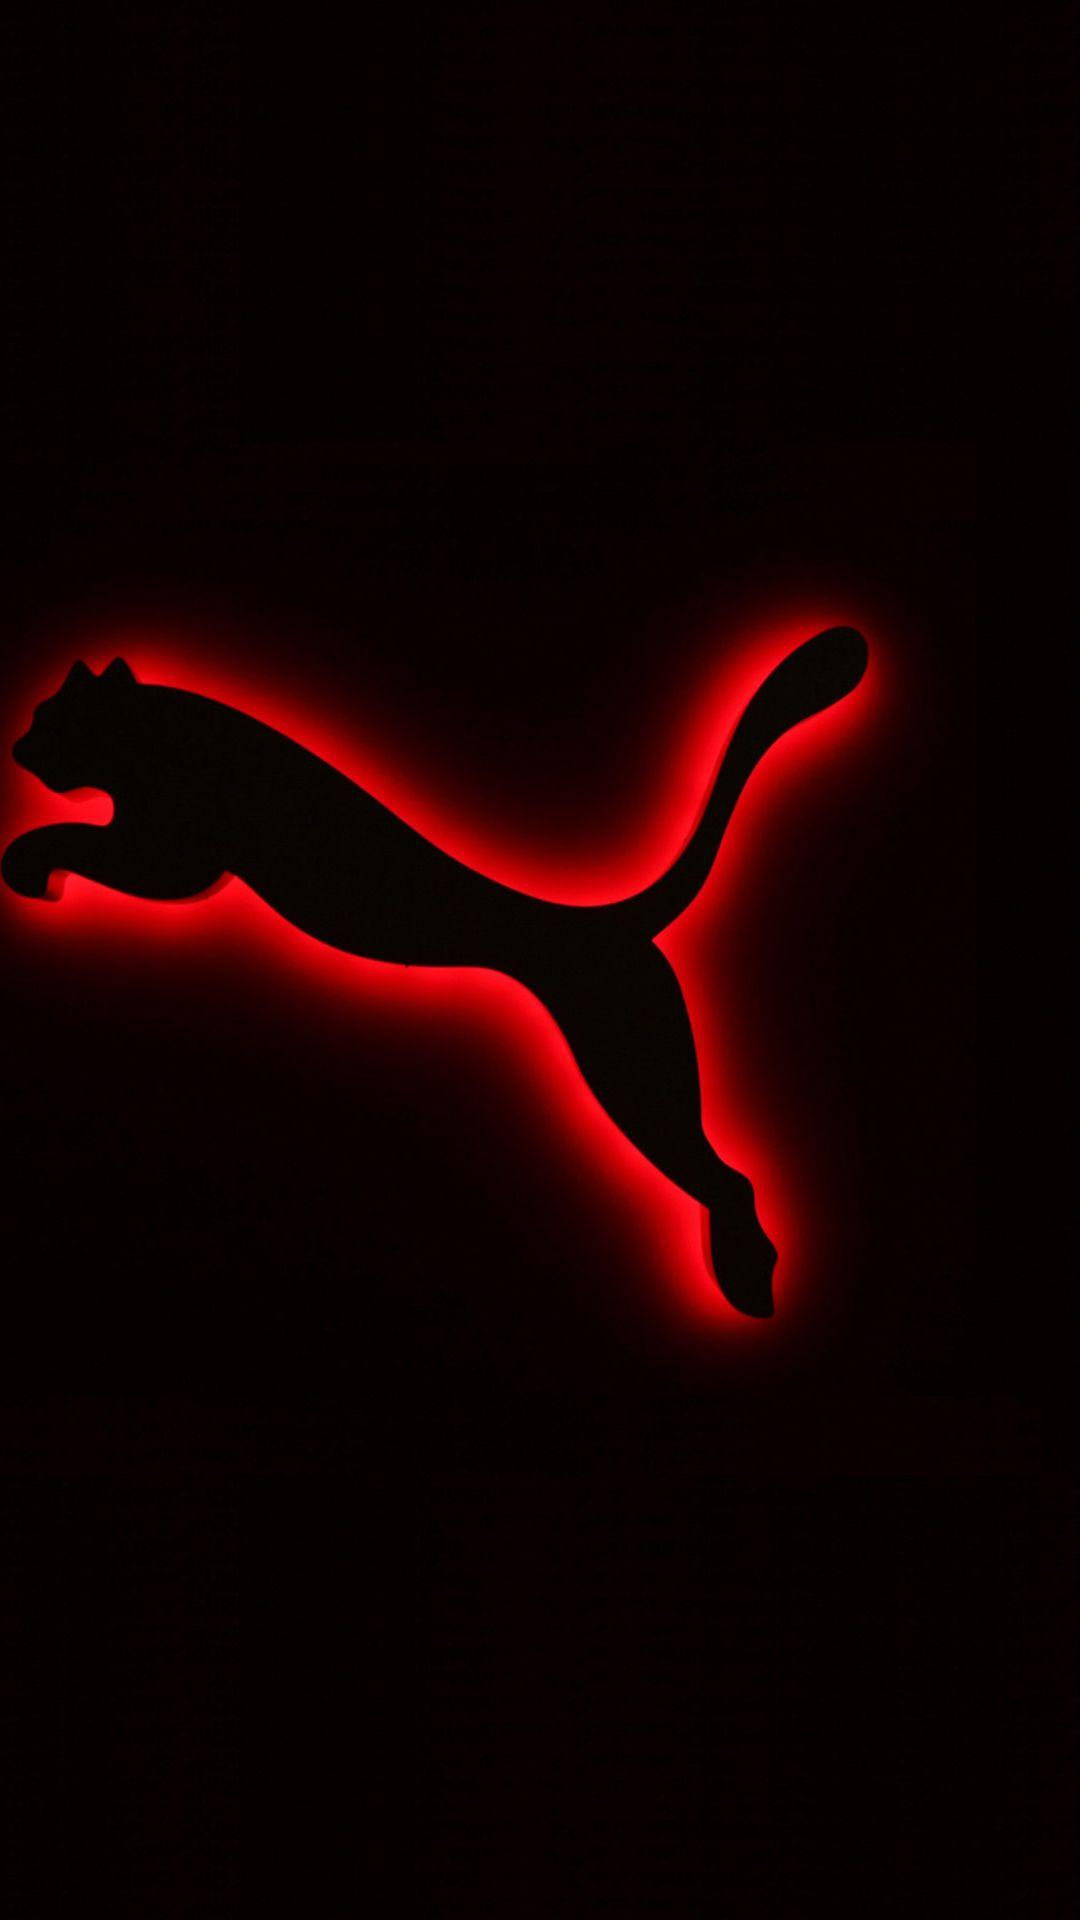 Puma logo iphone mobile photo